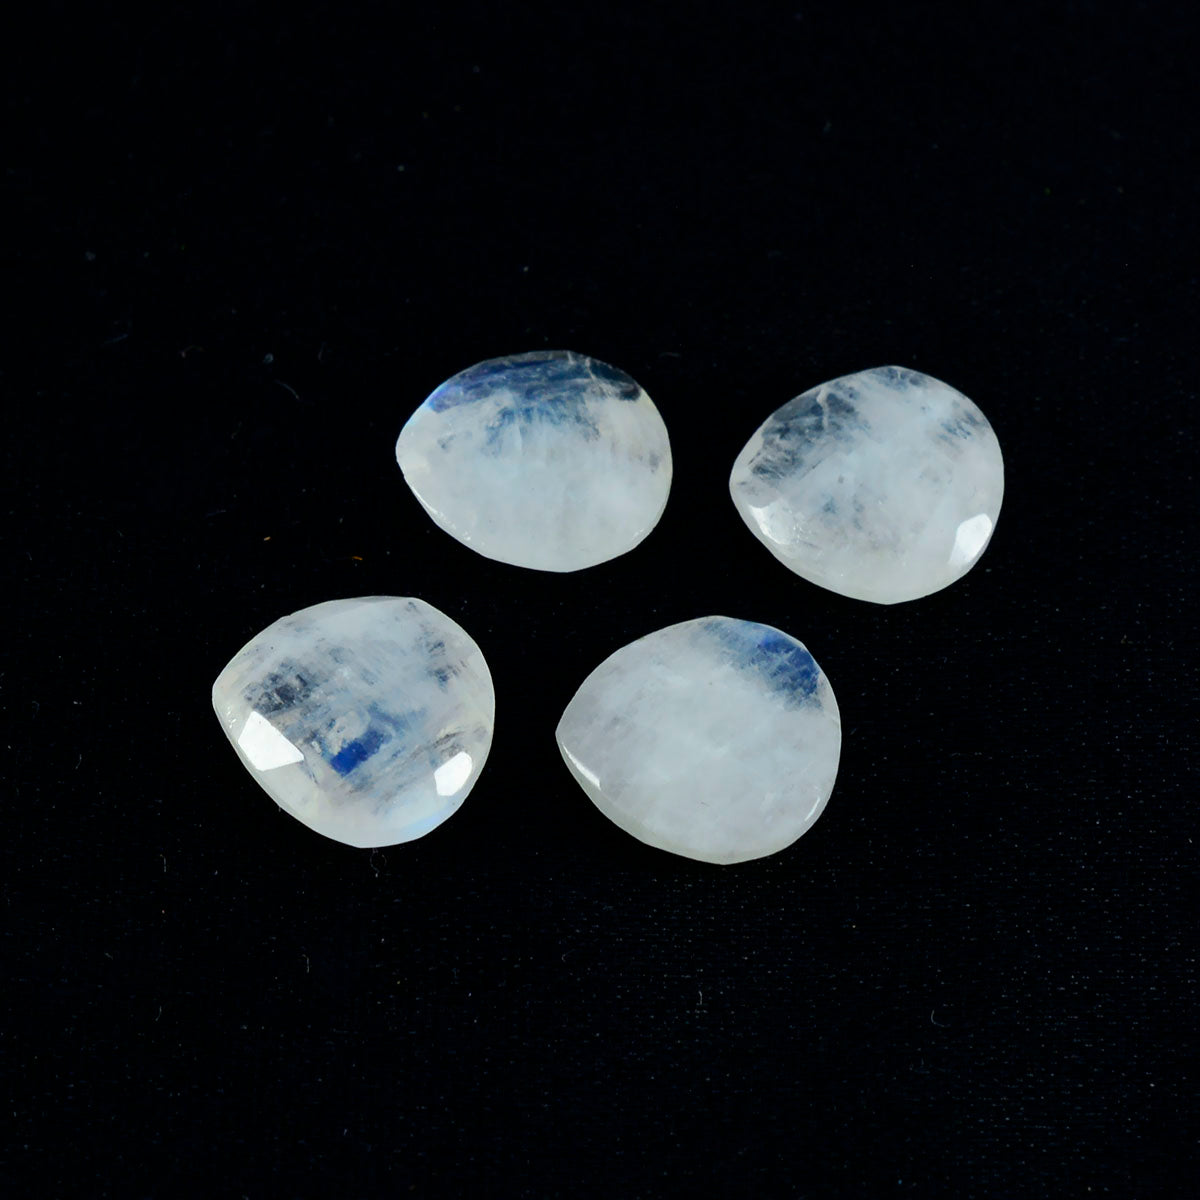 Riyogems 1 Stück weißer Regenbogen-Mondstein, facettiert, 15 x 15 mm, Herzform, hübscher Qualitätsstein